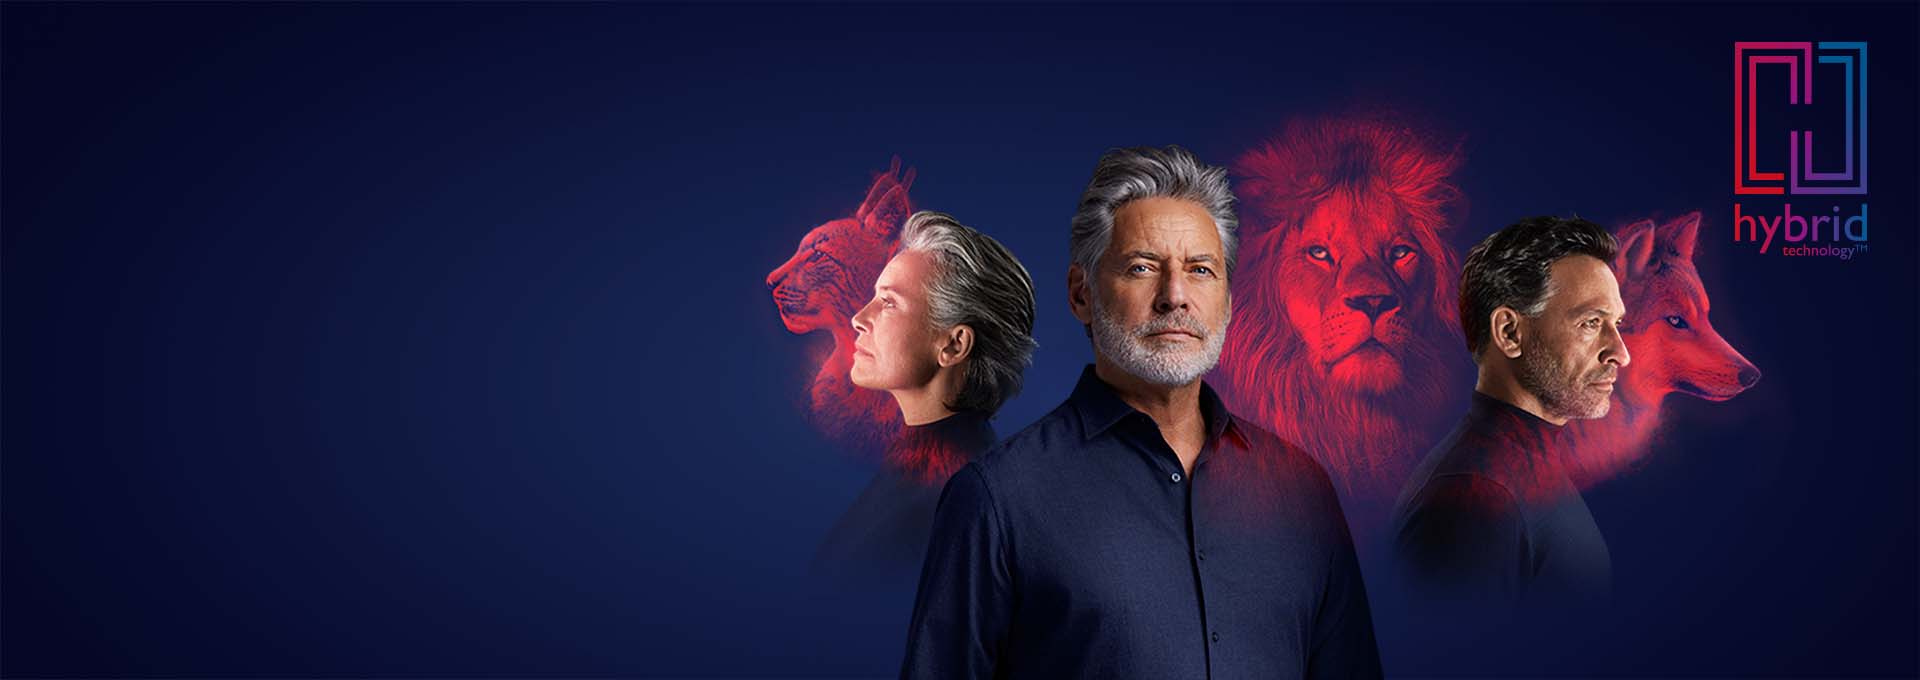 Vrouw en mannen met Bernafon Alpha oplaadbare hoortoestellen voor tekening van lynx, leeuw en wolf met Hybrid Technology logo